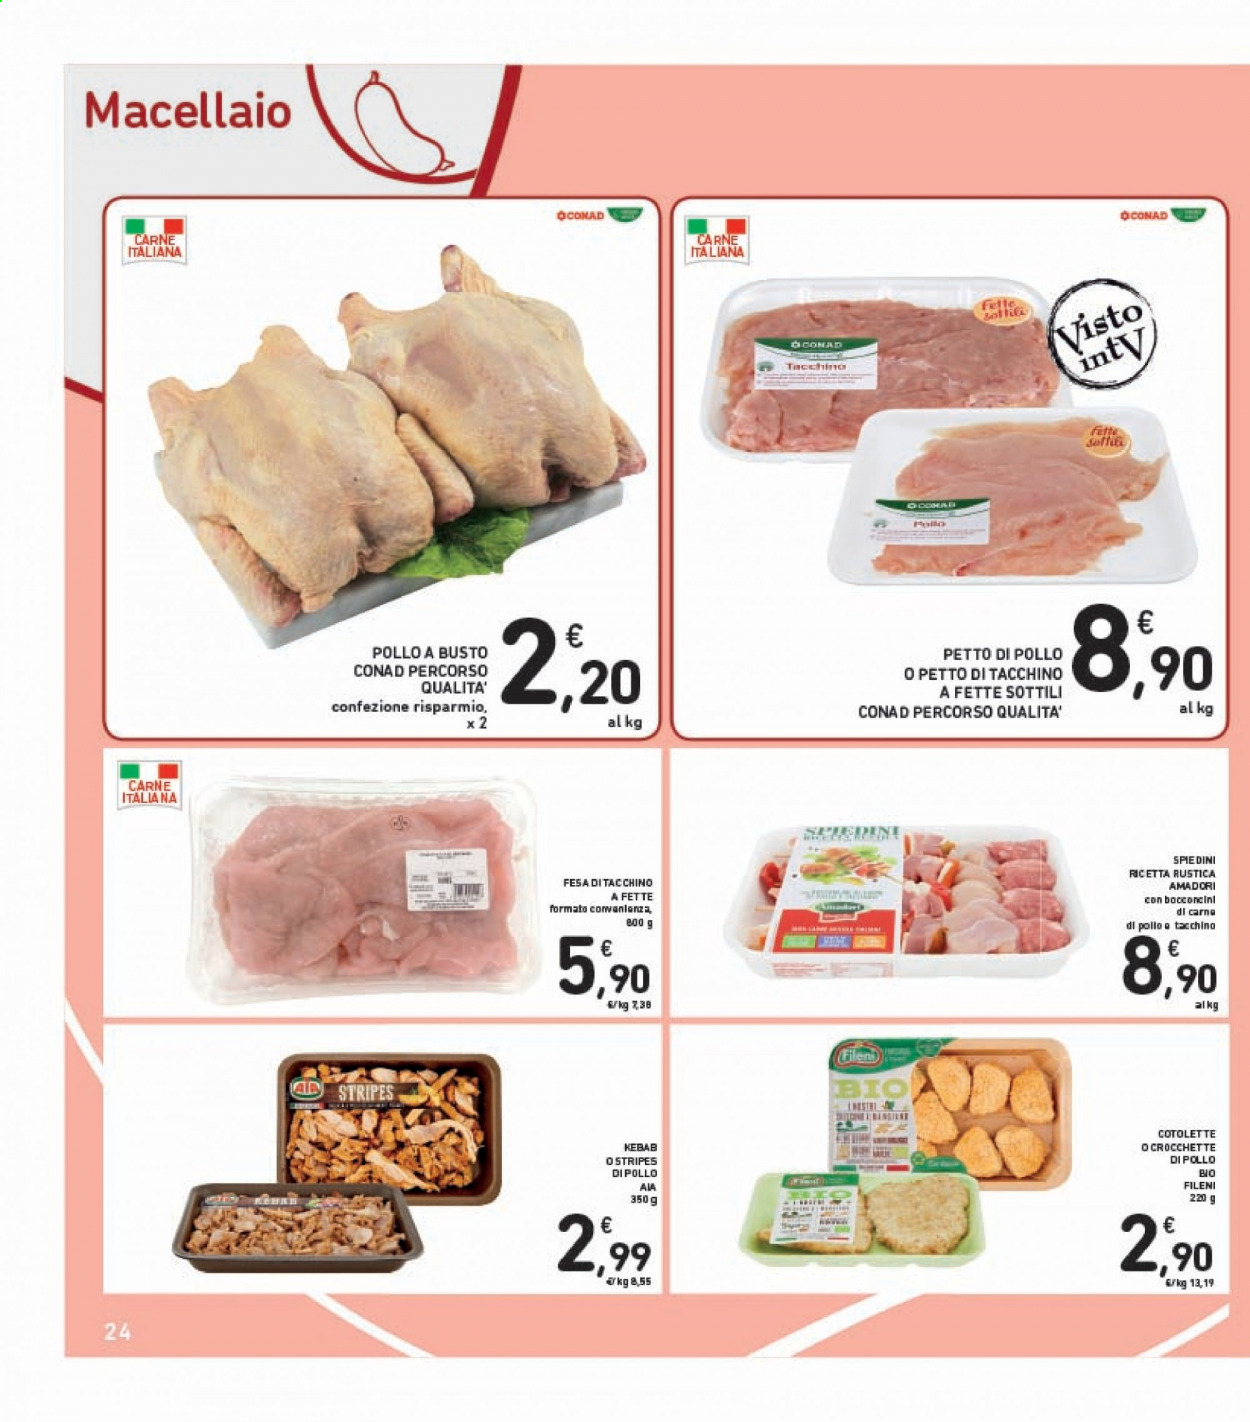 thumbnail - Volantino Conad - 12/3/2021 - 24/3/2021 - Prodotti in offerta - petto di pollo, petto di tacchino, pollo intero, bocconcini di pollo, AIA, Amadori, spiedini, kebab. Pagina 24.